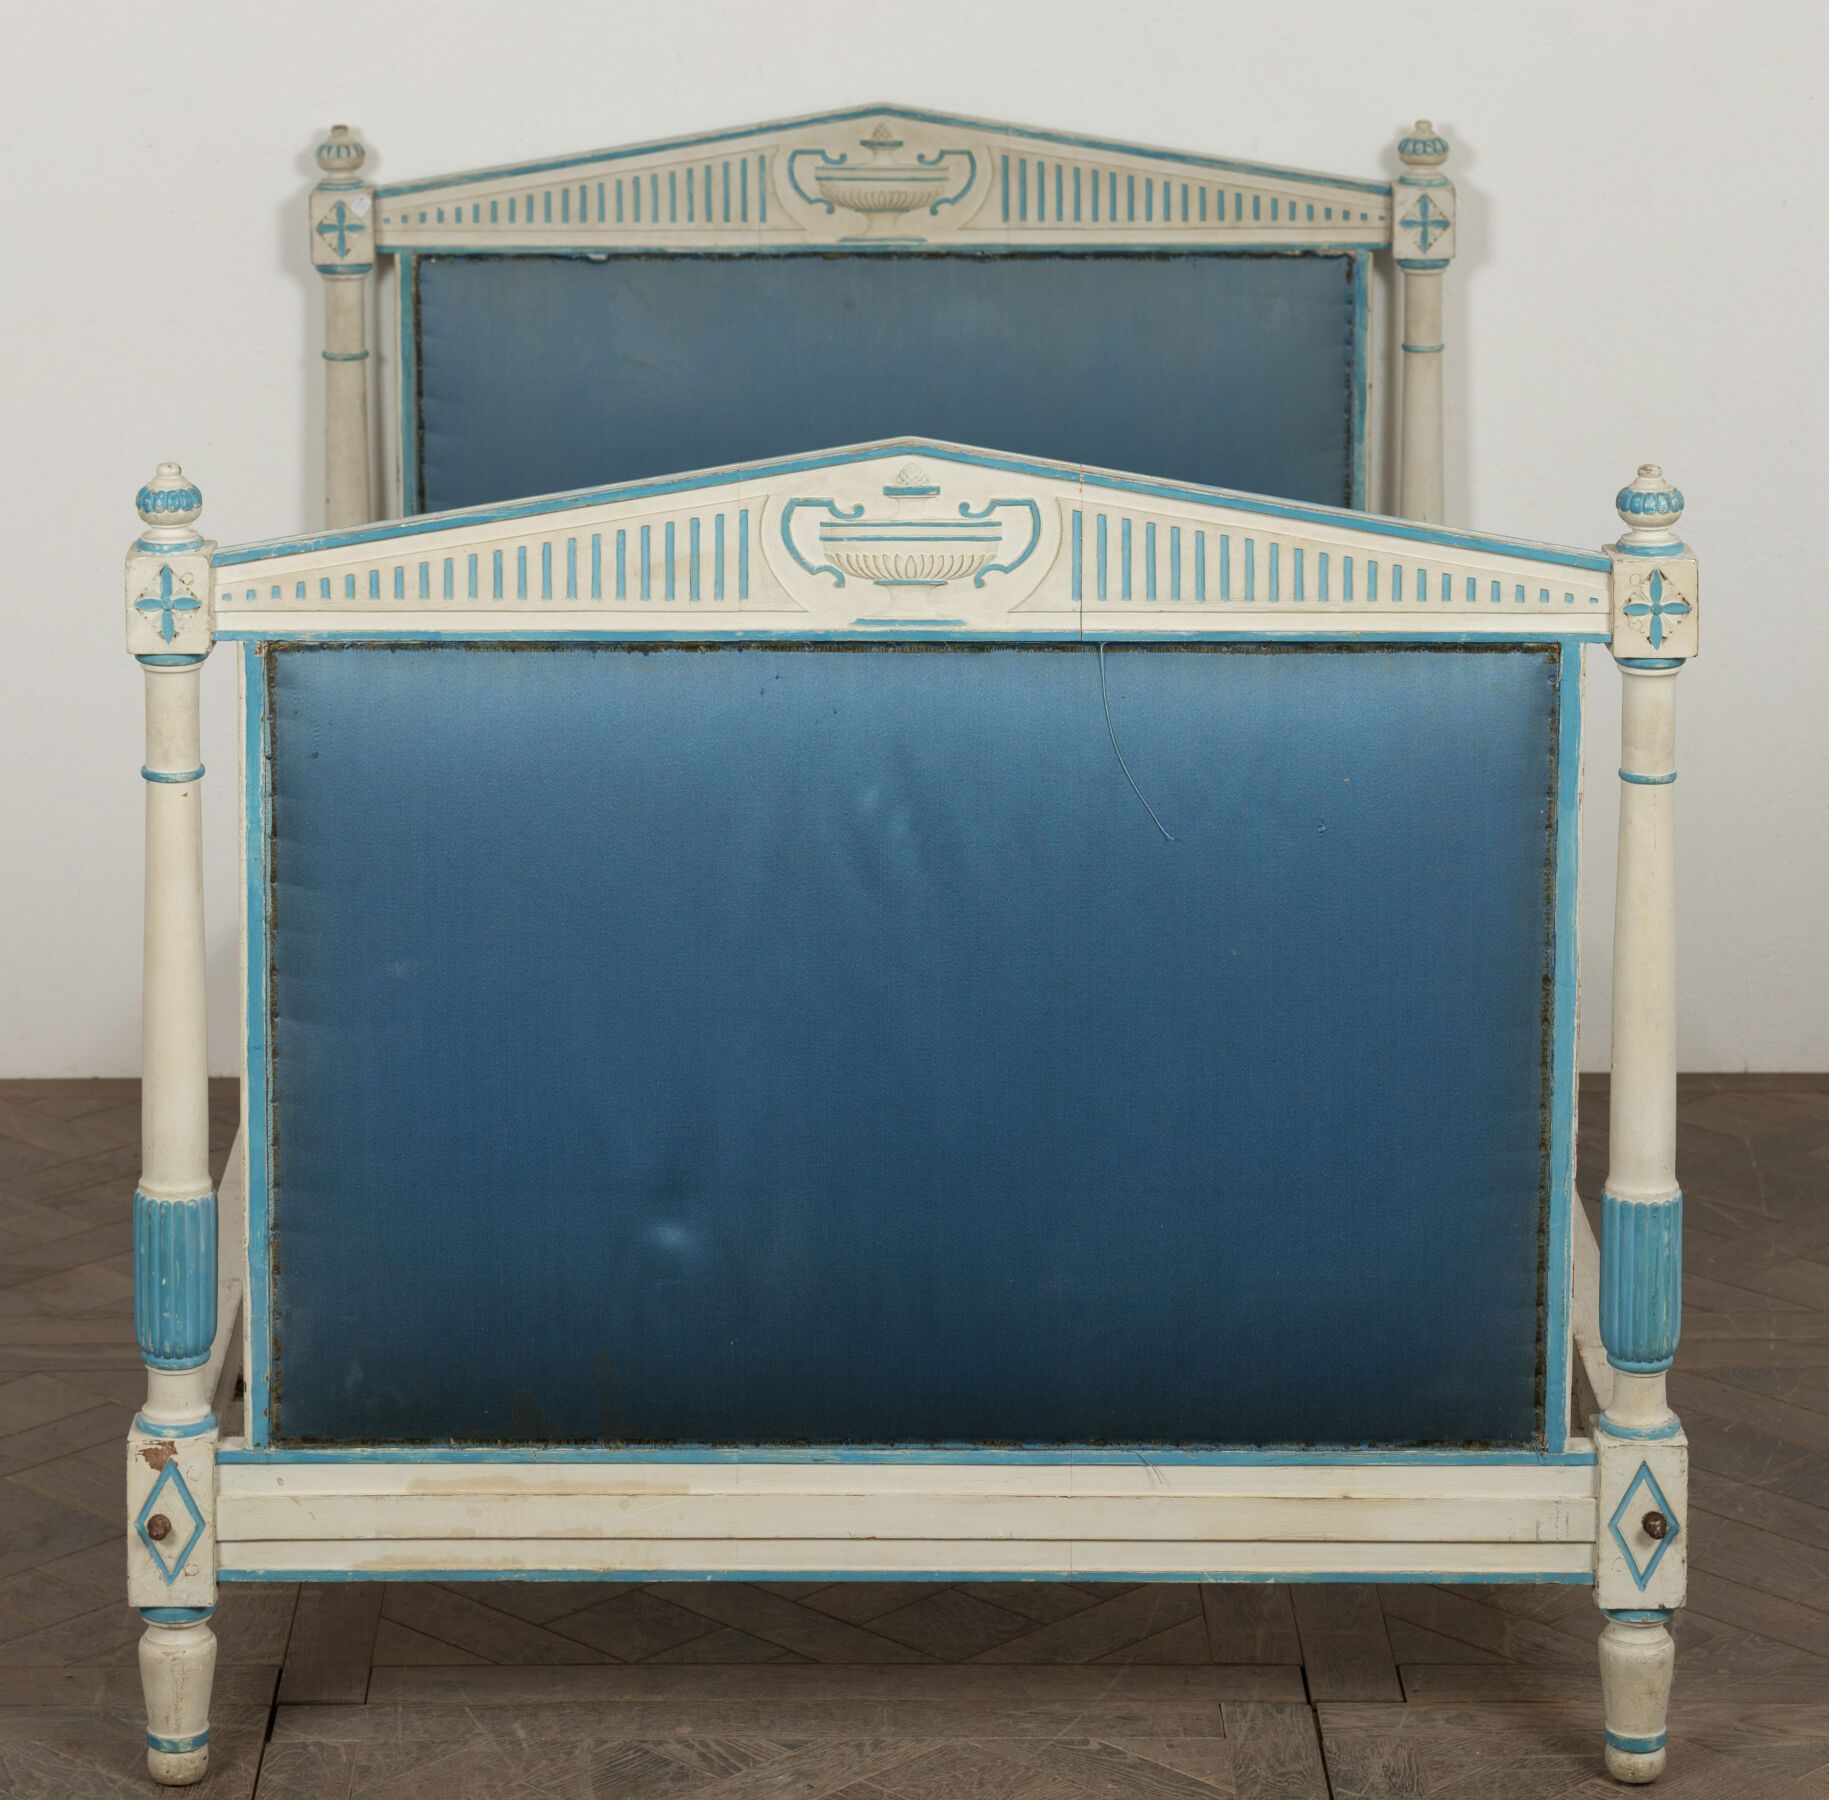 Null 模制和雕刻的木床涂有白色和蓝色的漆，立柱上有独立的柱子，顶部有一个三角形的踏板，上面装饰着一个火盆，上面有蓝色的丝绸挂毯。
Directoire时期。&hellip;